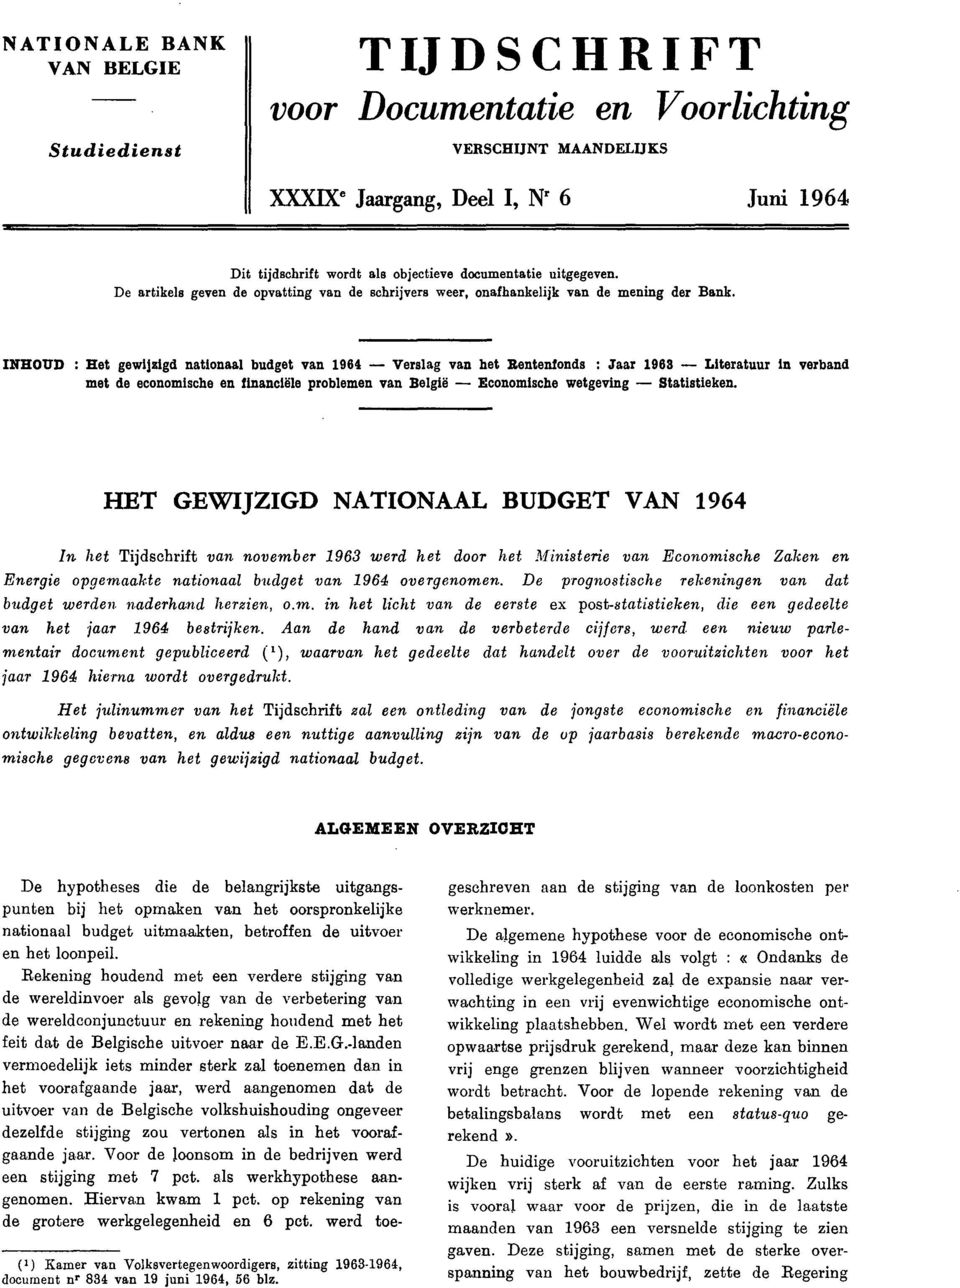 INHOUD : Het gewijzigd nationaal budget van 1964 Verslag van het Rentenfonds : Jaar 1968 Literatuur in verband met de economische en financiële problemen van België Economische wetgeving Statistieken.